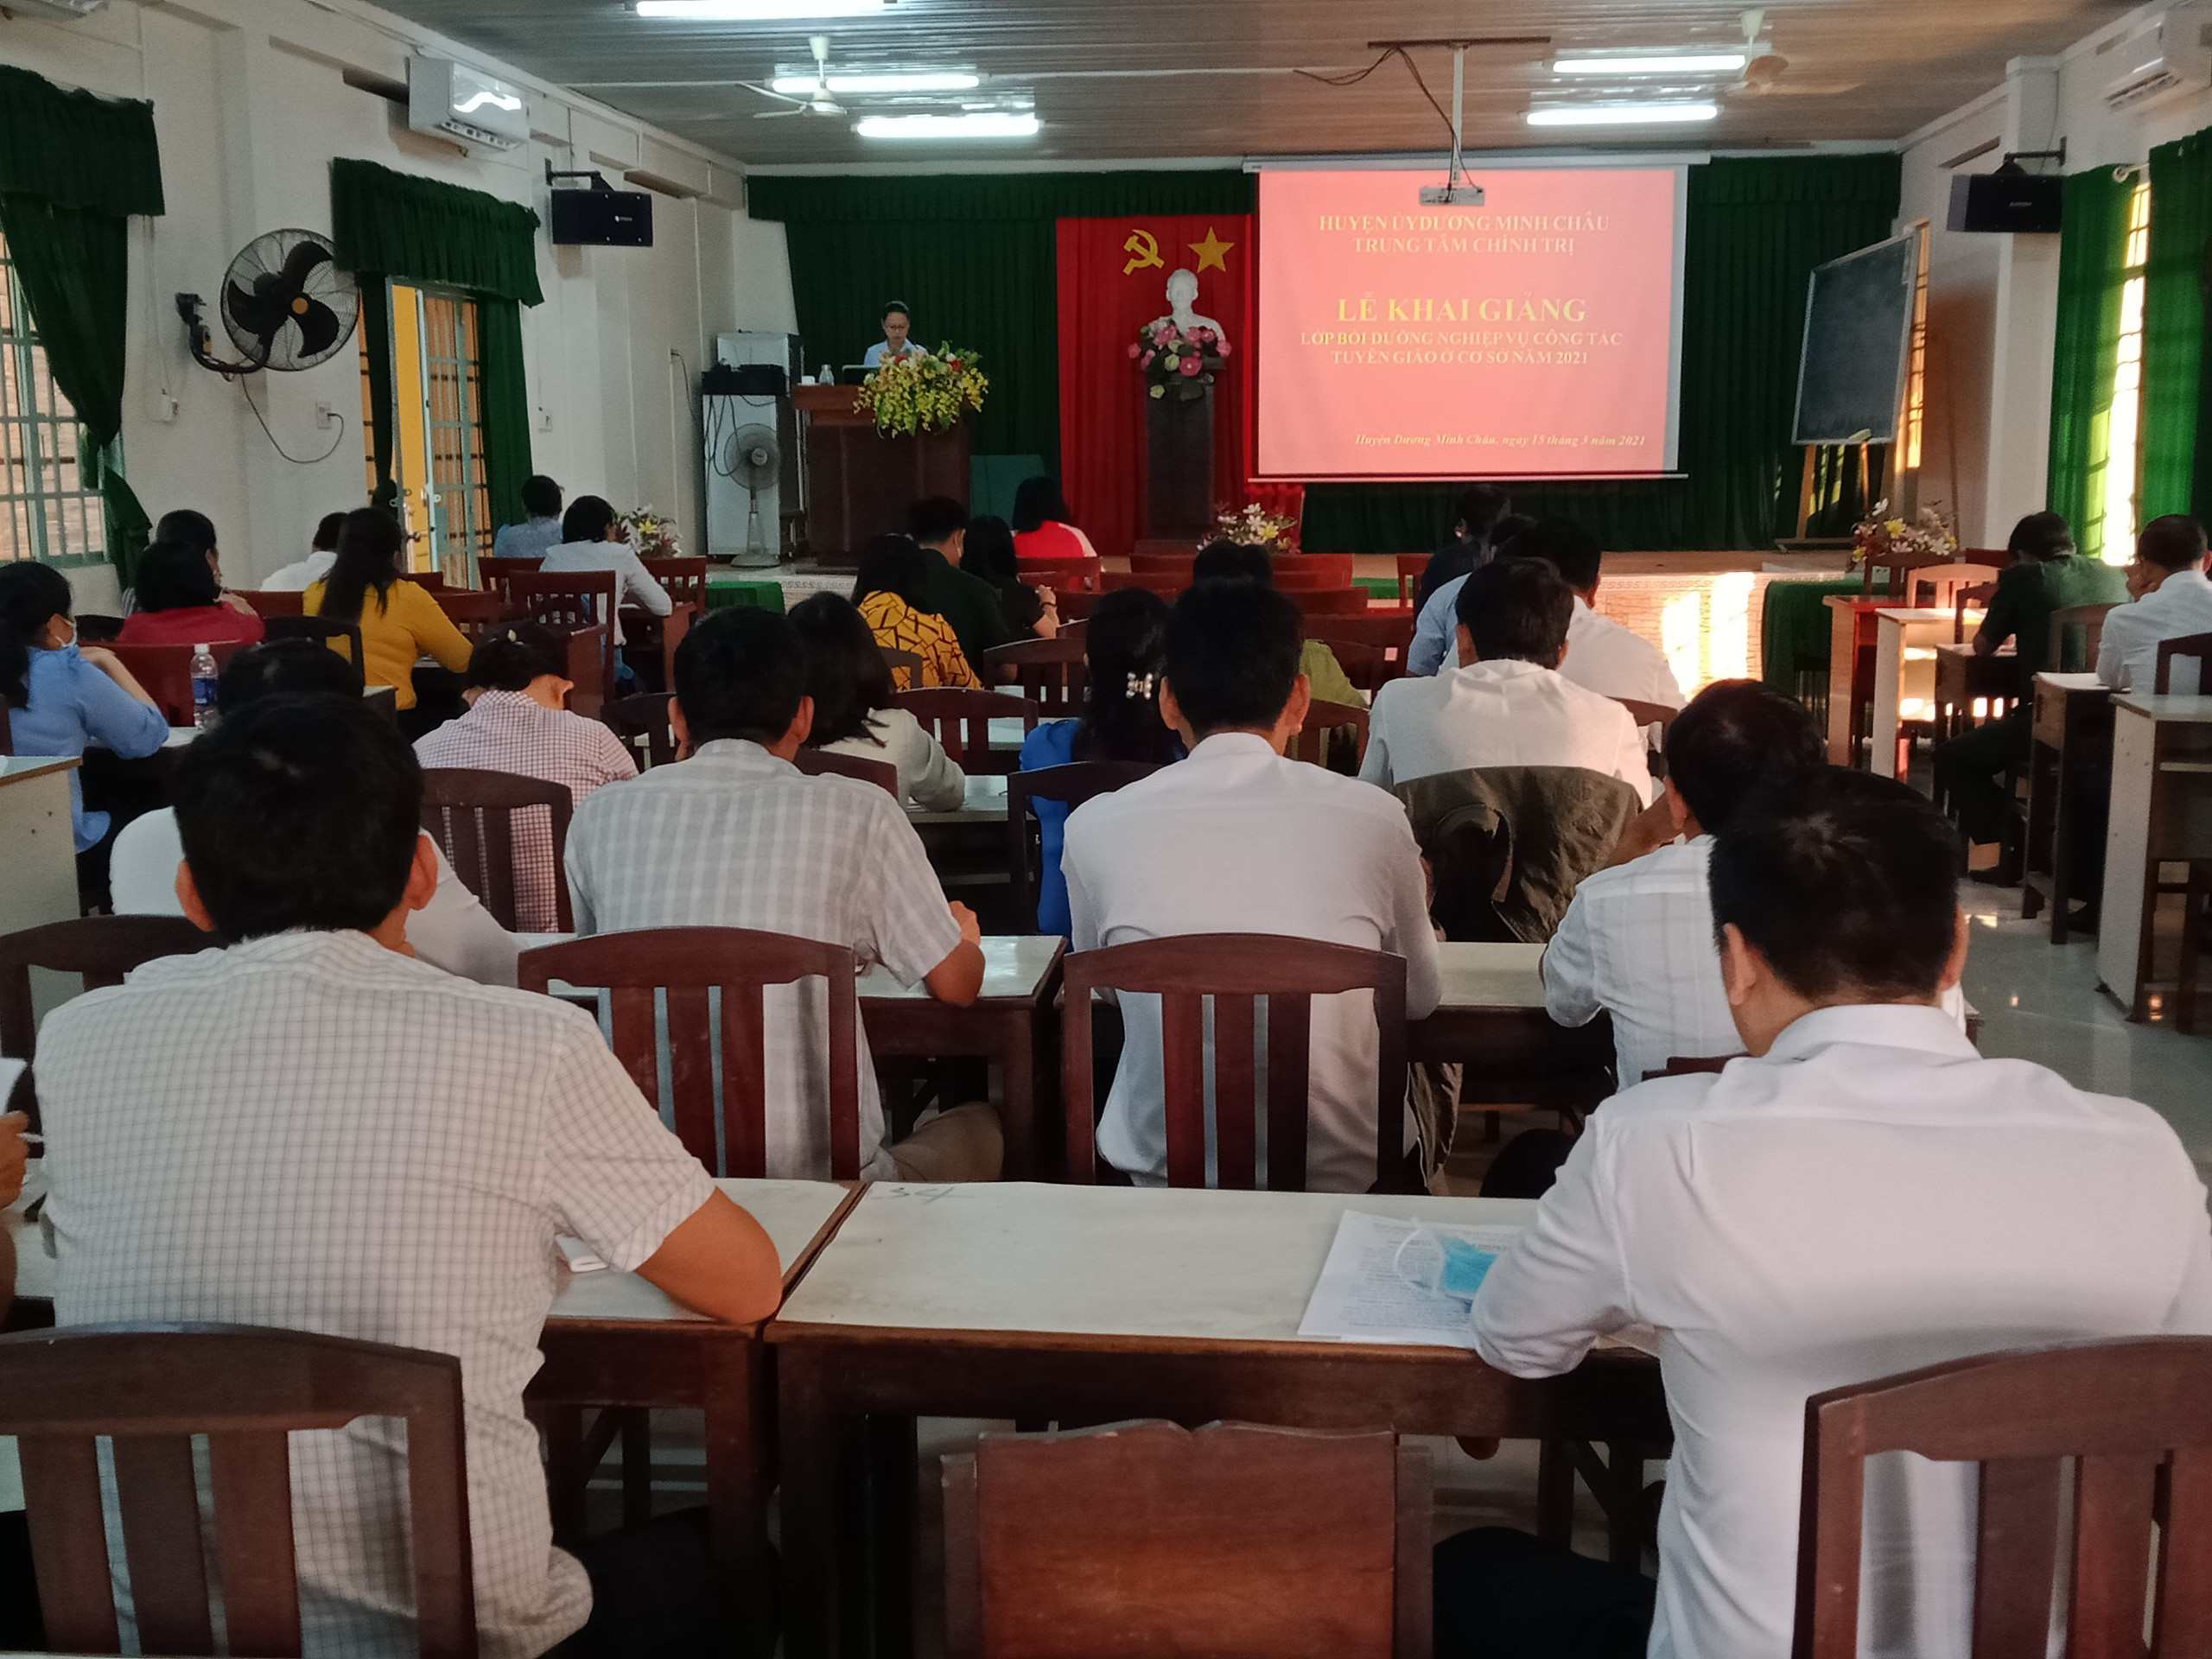 Huyện Dương Minh Châu: Khai giảng lớp chuyên đề “Bồi dưỡng nghiệp vụ công tác tuyên giáo ở cơ sở” năm 2021